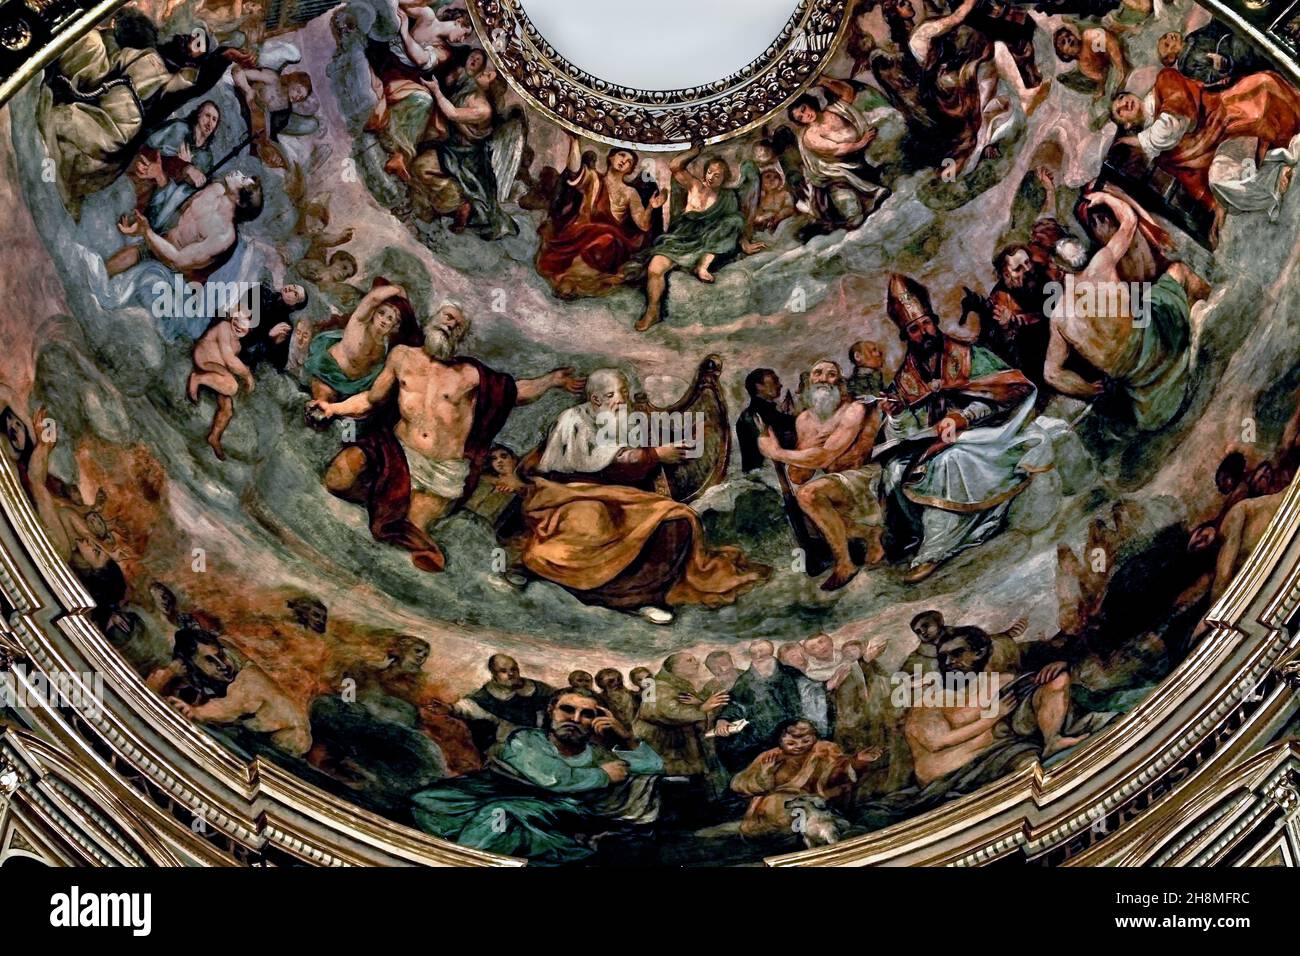 Chiesa del Gesù e dei Santi Ambrogio e Andrea - Kirche Jesu und der Heiligen Ambrose und Andrew Genua Italien Italienisch ( Es wird von den Jesuits seit dem sechzehnten Jahrhundert regiert, mit sehr reichen Interieurs, enthalten Werke von Peter Paul Rubens, Guido Reni, und die genuesischen Barockkünstler.) Stockfoto